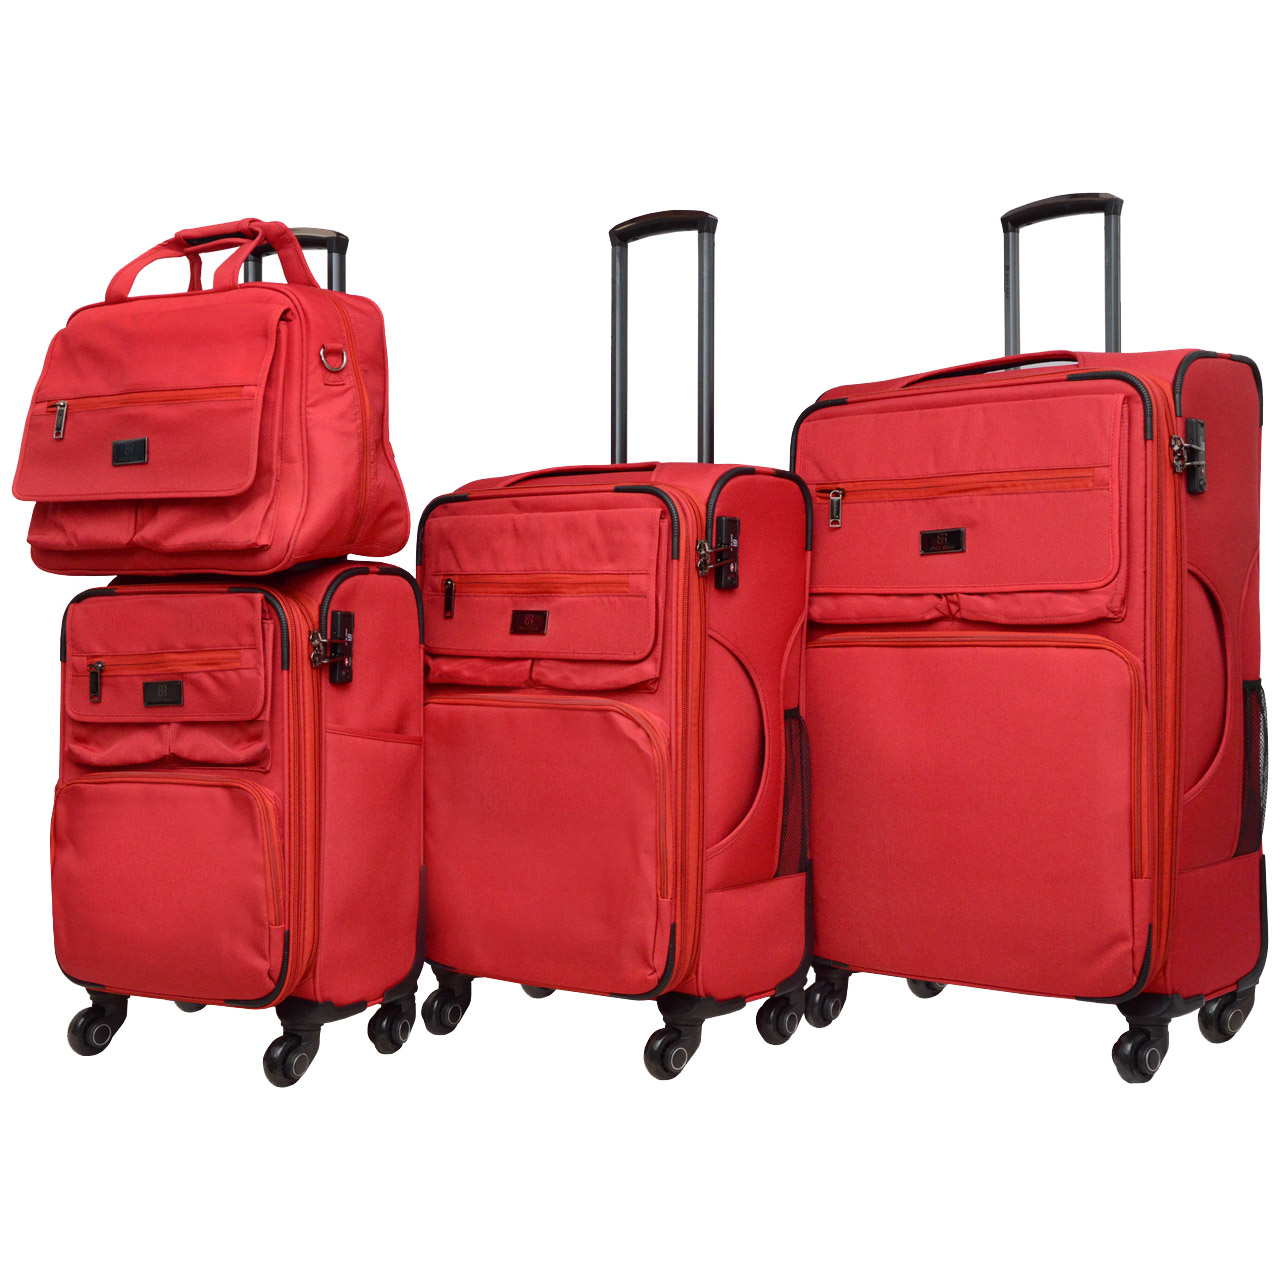 مجموعه چهار عددی چمدان انزو رسی مدل ER 9565